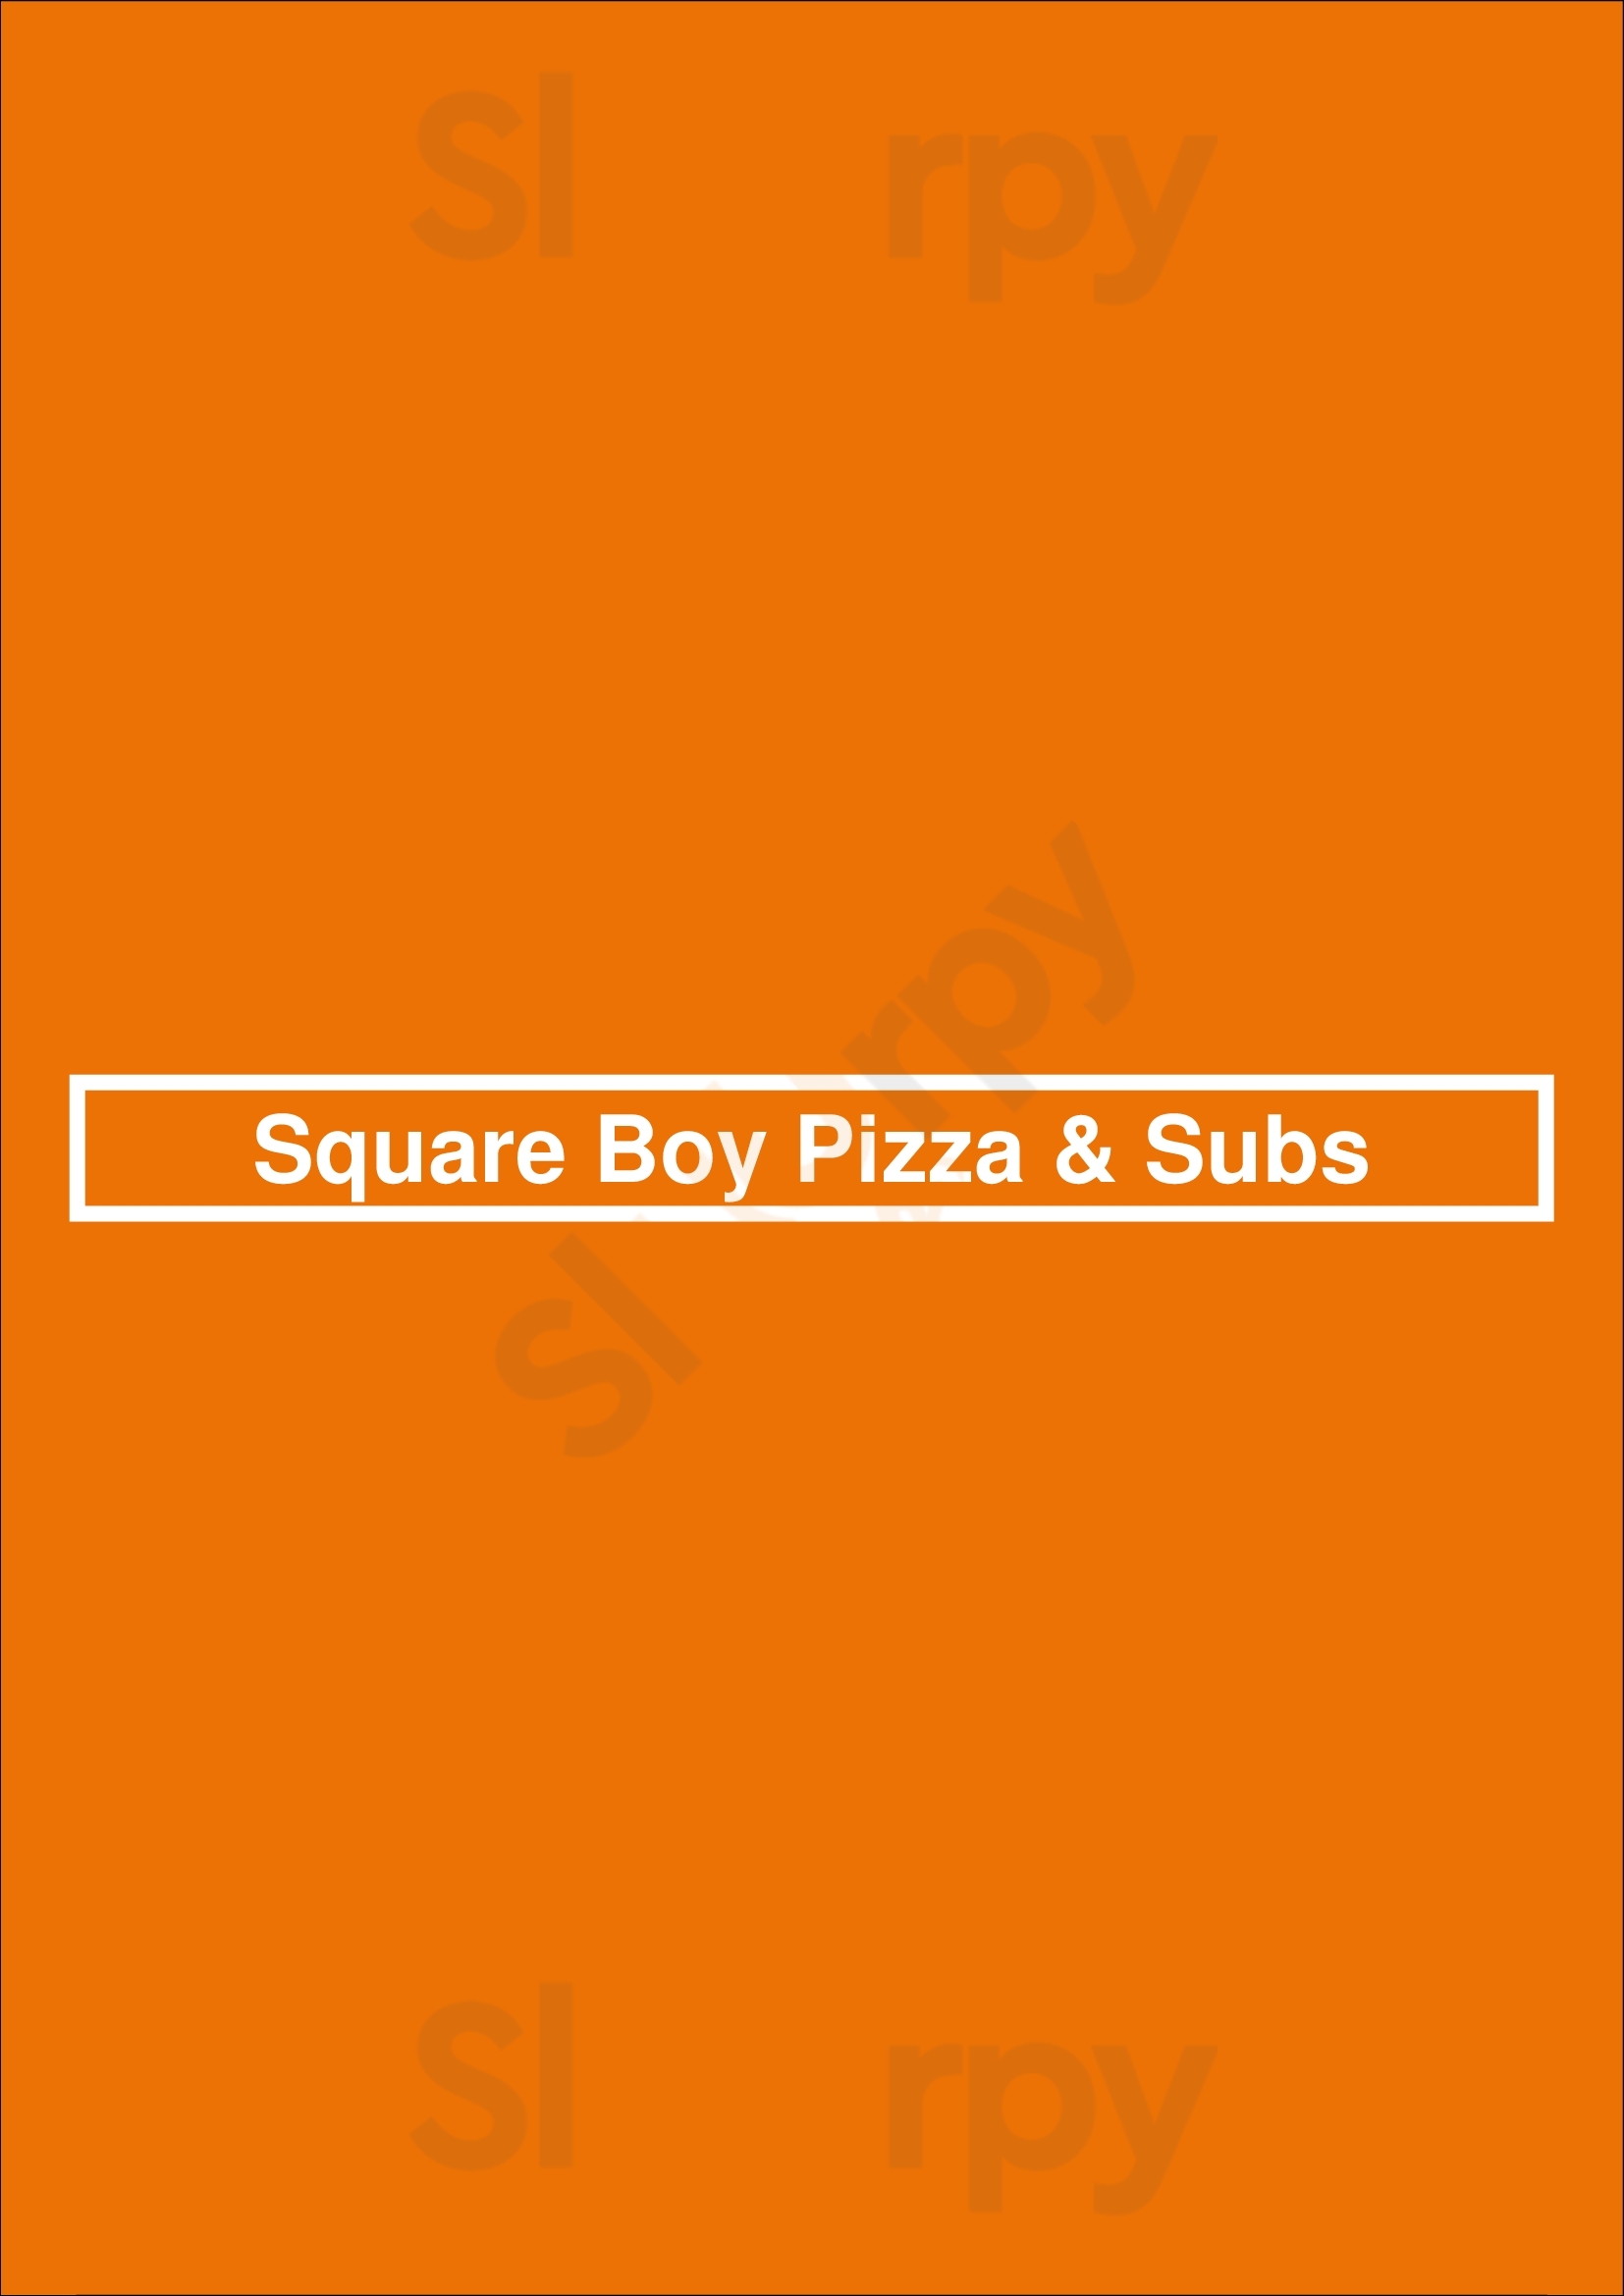 Square Boy Pizza & Subs Bowmanville Menu - 1